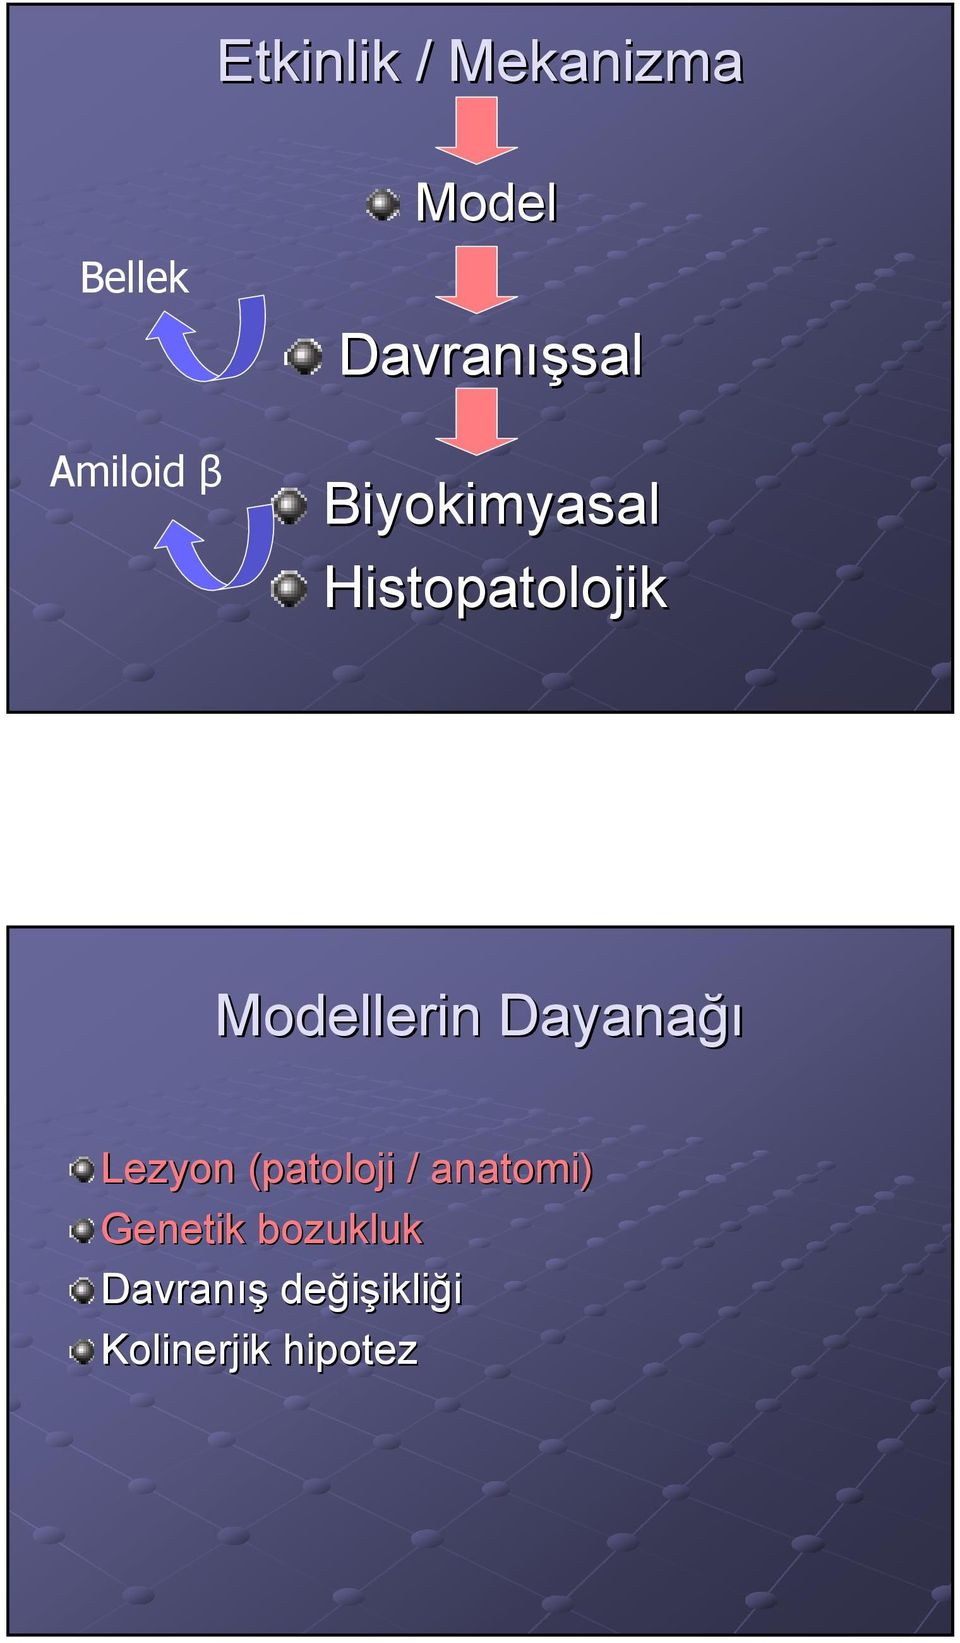 Modellerin Dayanağı Lezyon (patoloji / anatomi)